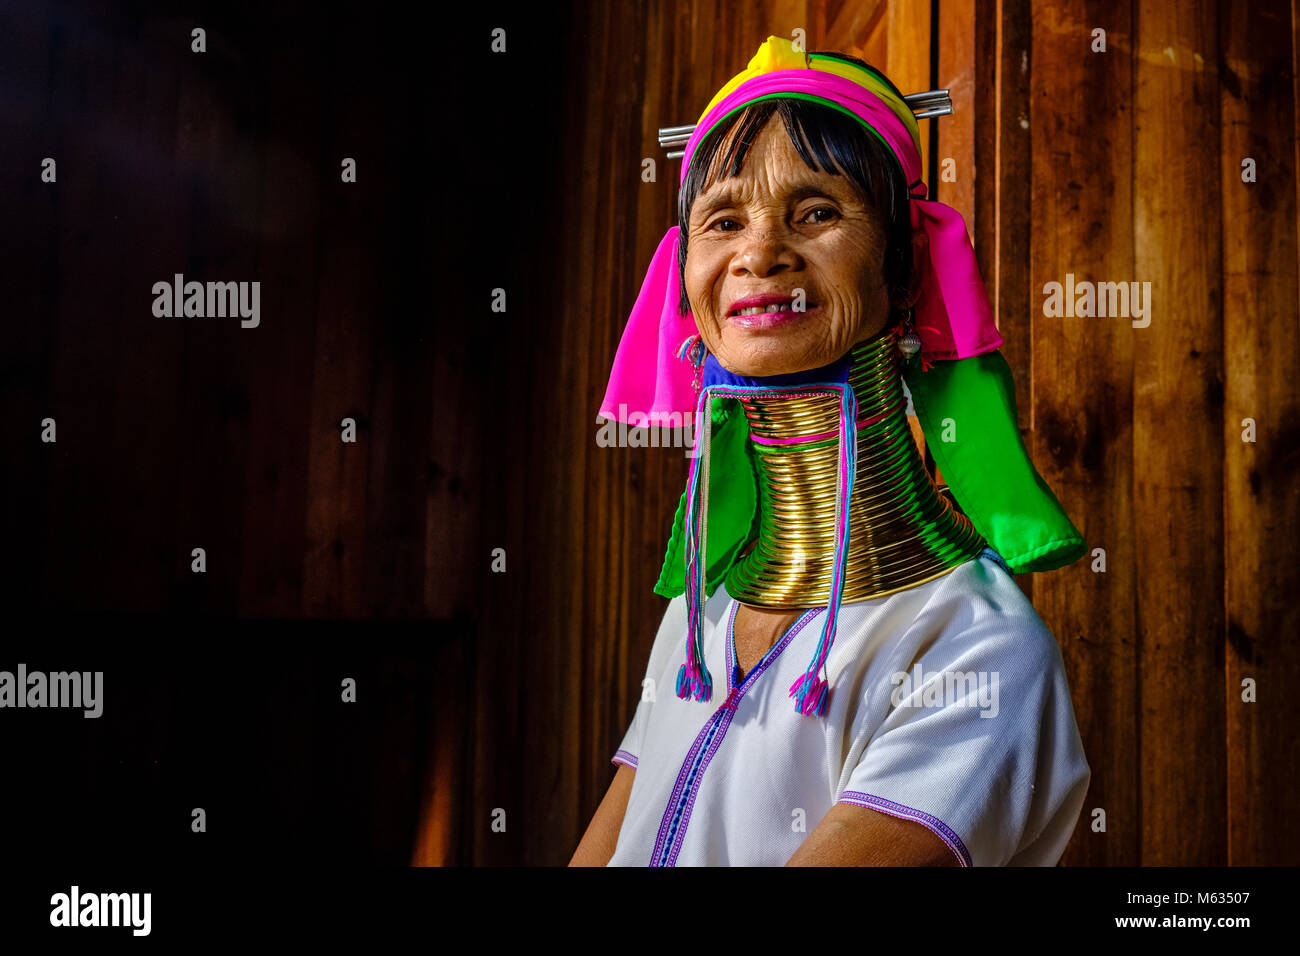 Retrato de una vieja dama perteneciente a la tribu Padaung, vistiendo 29 anillos de bronce alrededor de su cuello, en la aldea de Ywama sobre una isla en el lago Inle Foto de stock